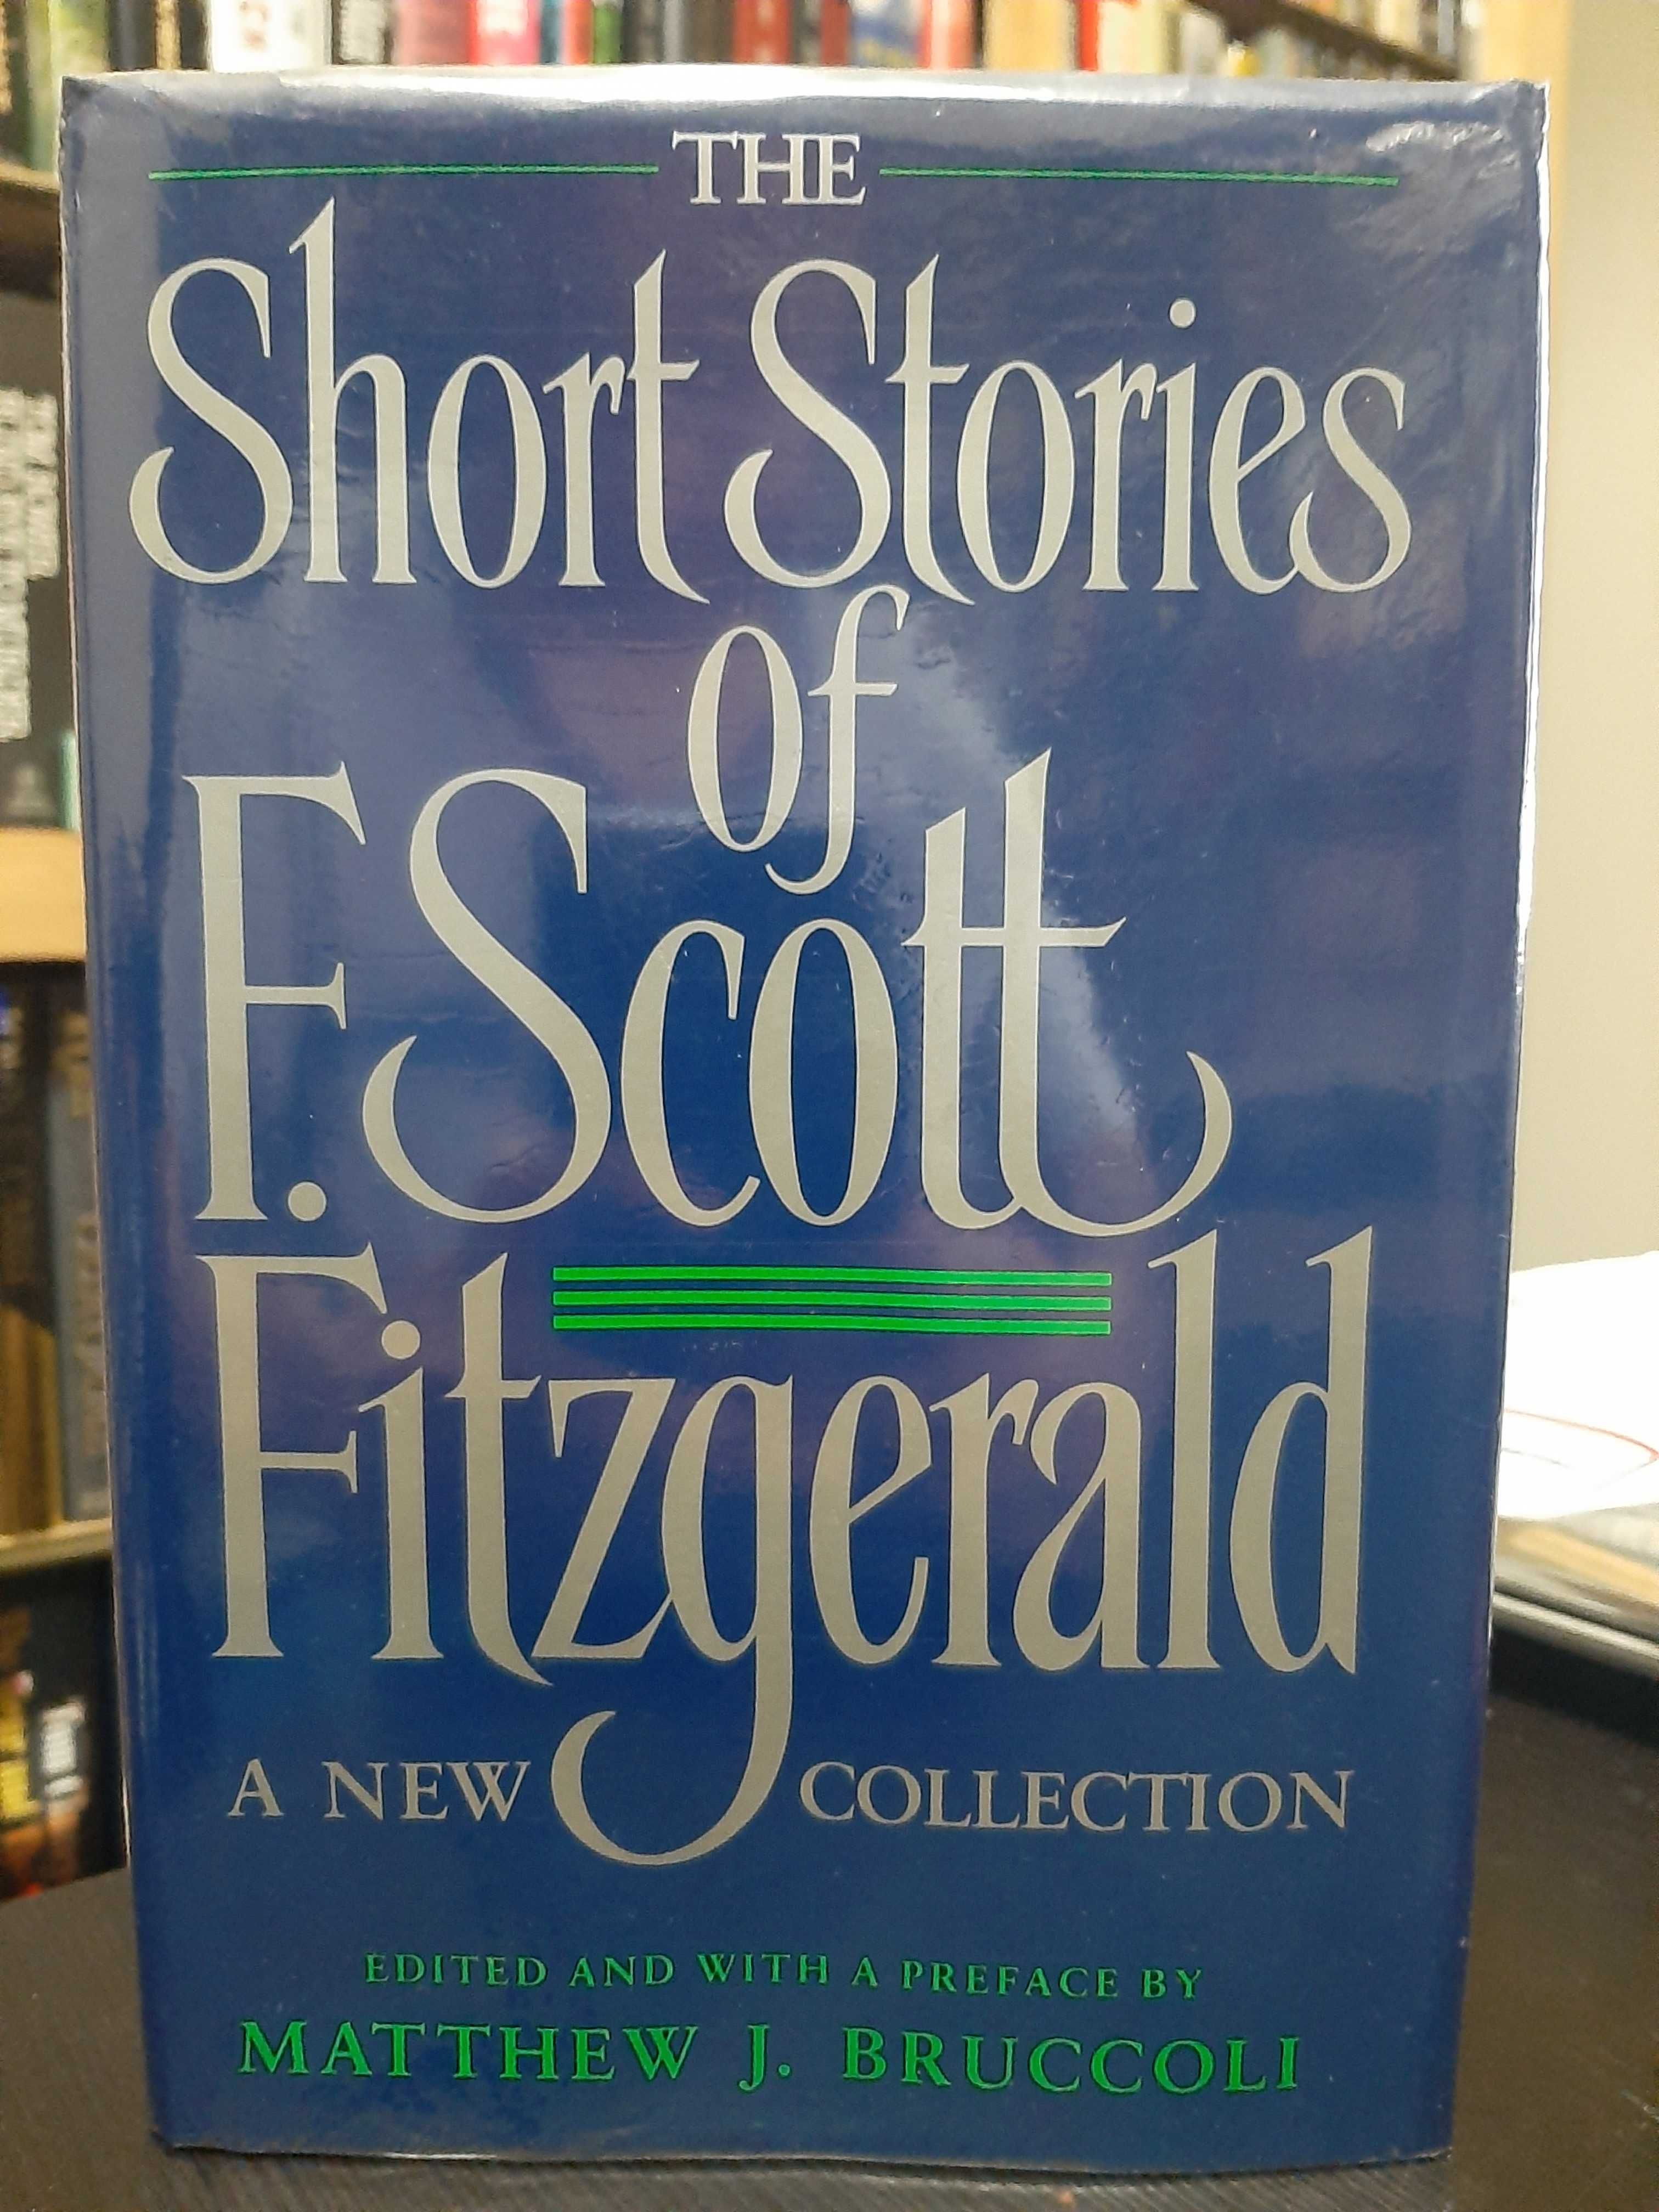 The Short Stories of F Scott Fitzgerald – edited by Matthew J Bruccoli